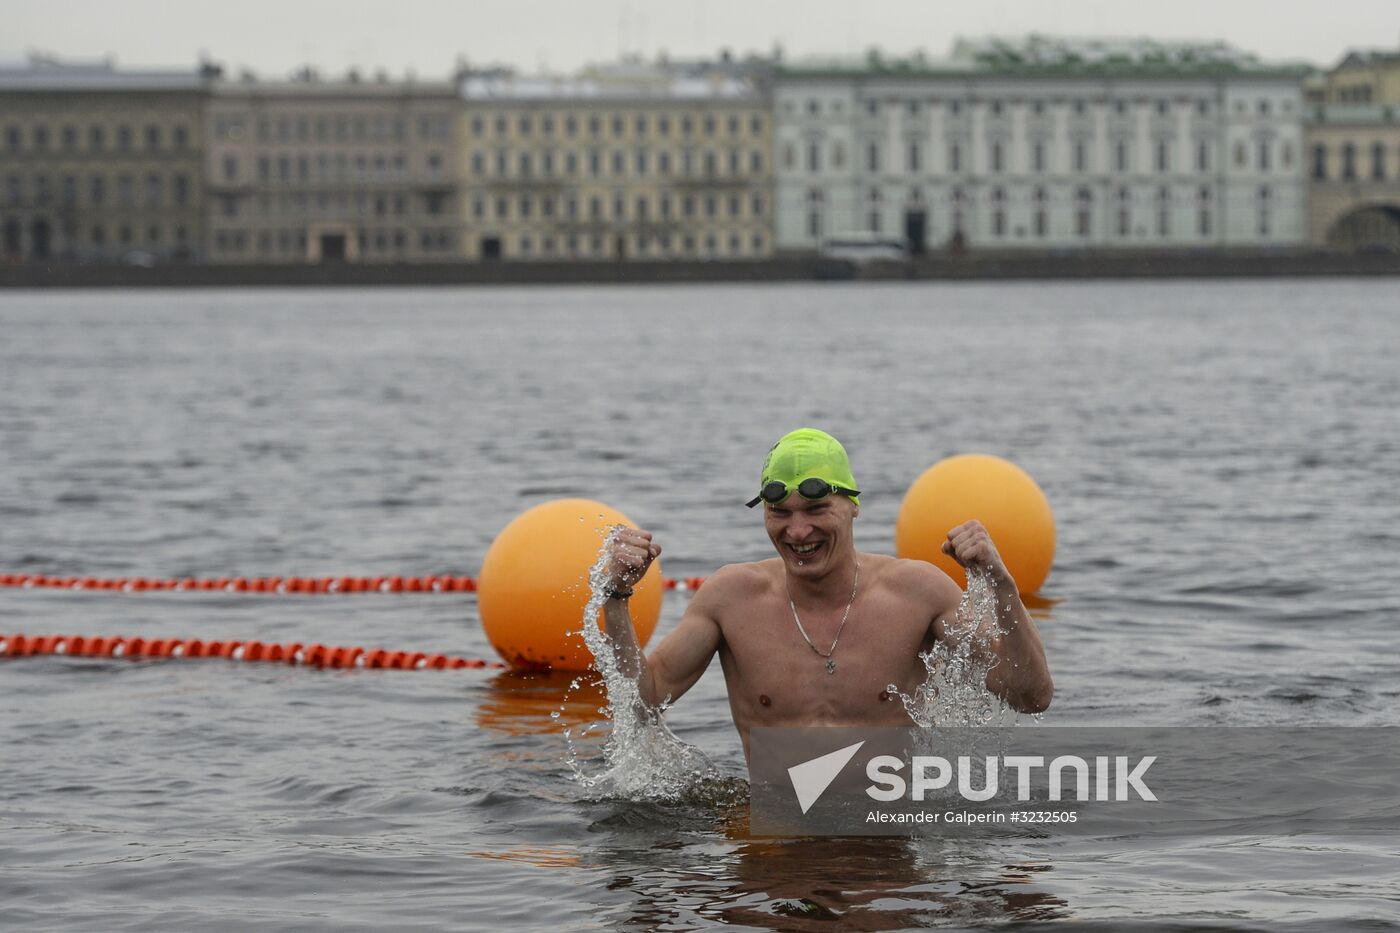 Ledostav winter swimming festival in St. Petersburg